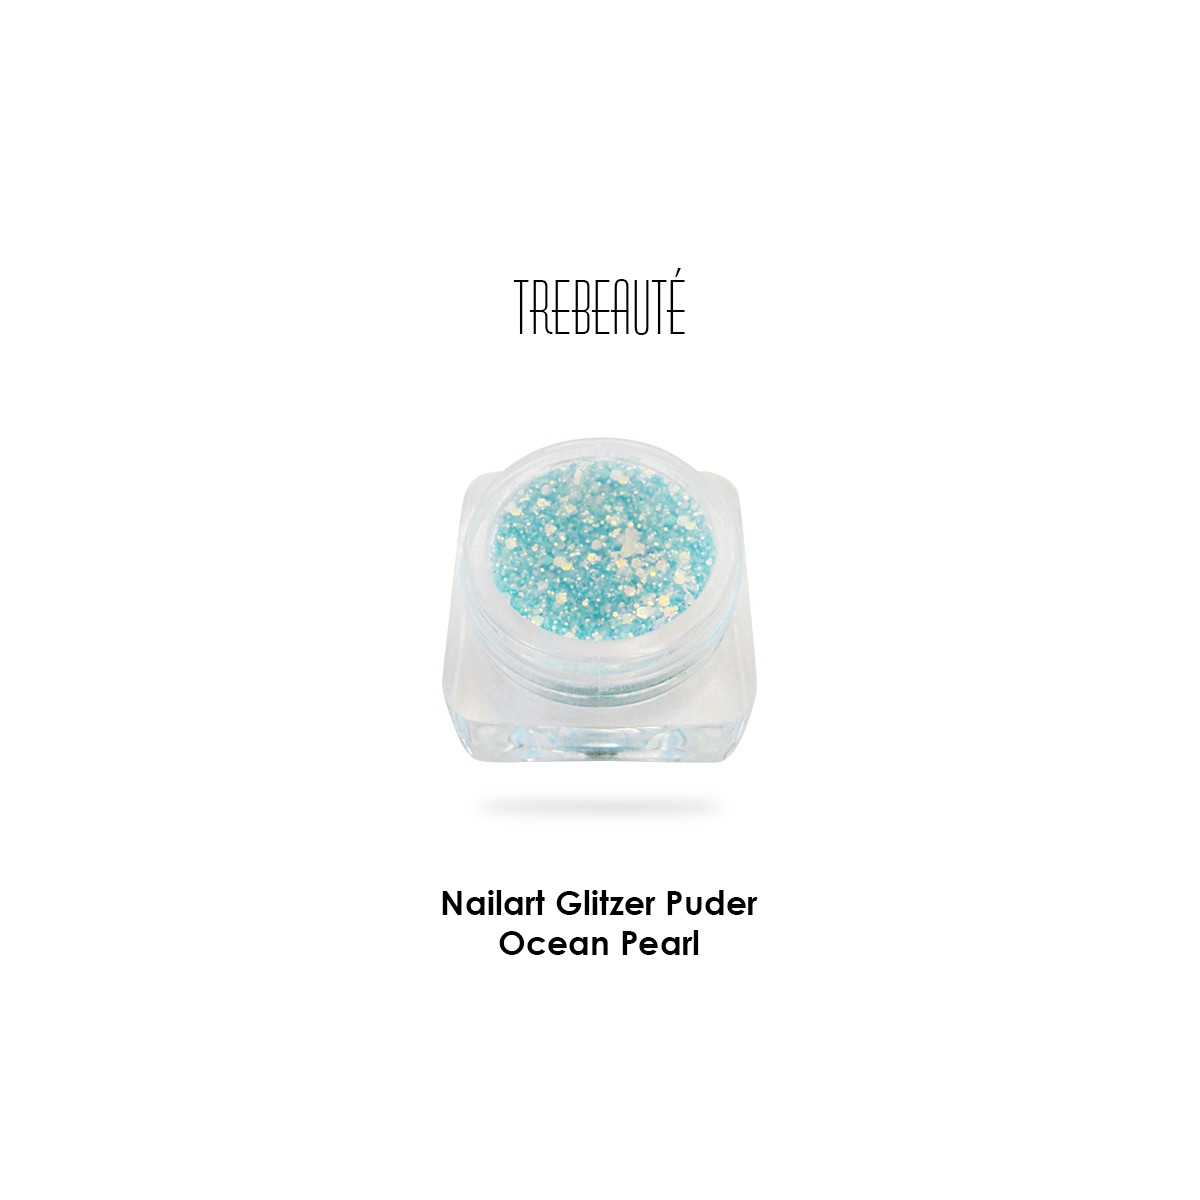 Nailart Glitzer Puder & Glitterstaub, Ocean Pearl